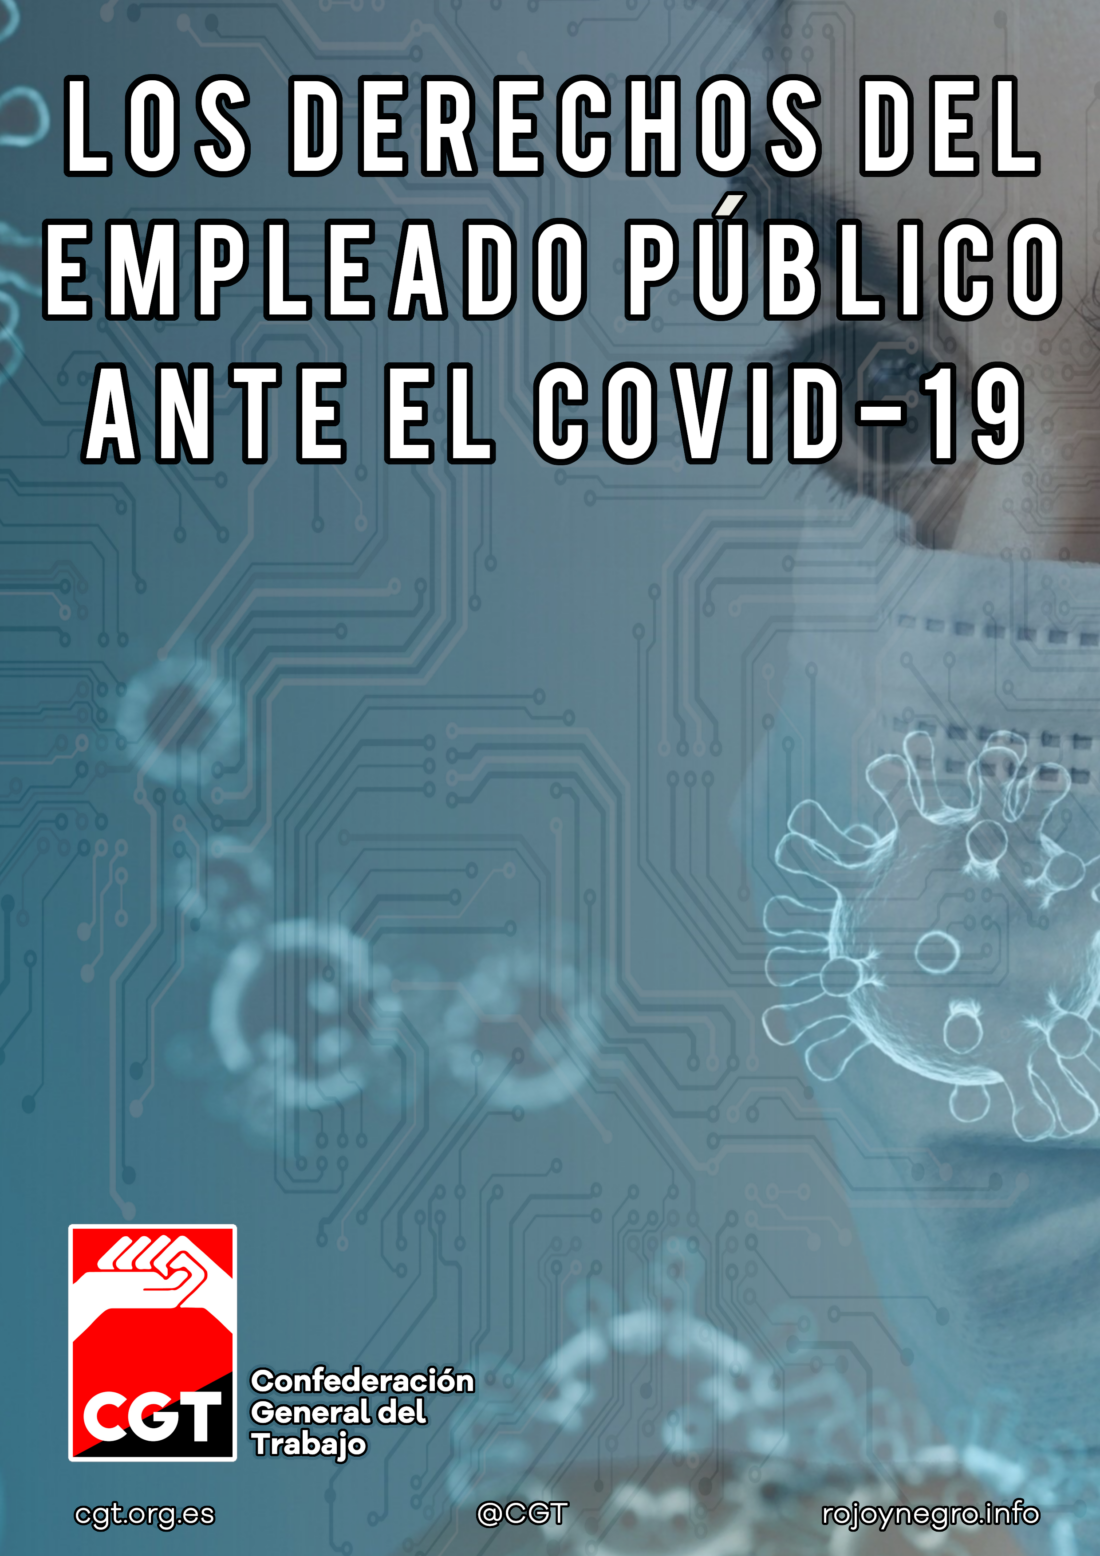 Los derechos del empleado publico ante el Covid-19